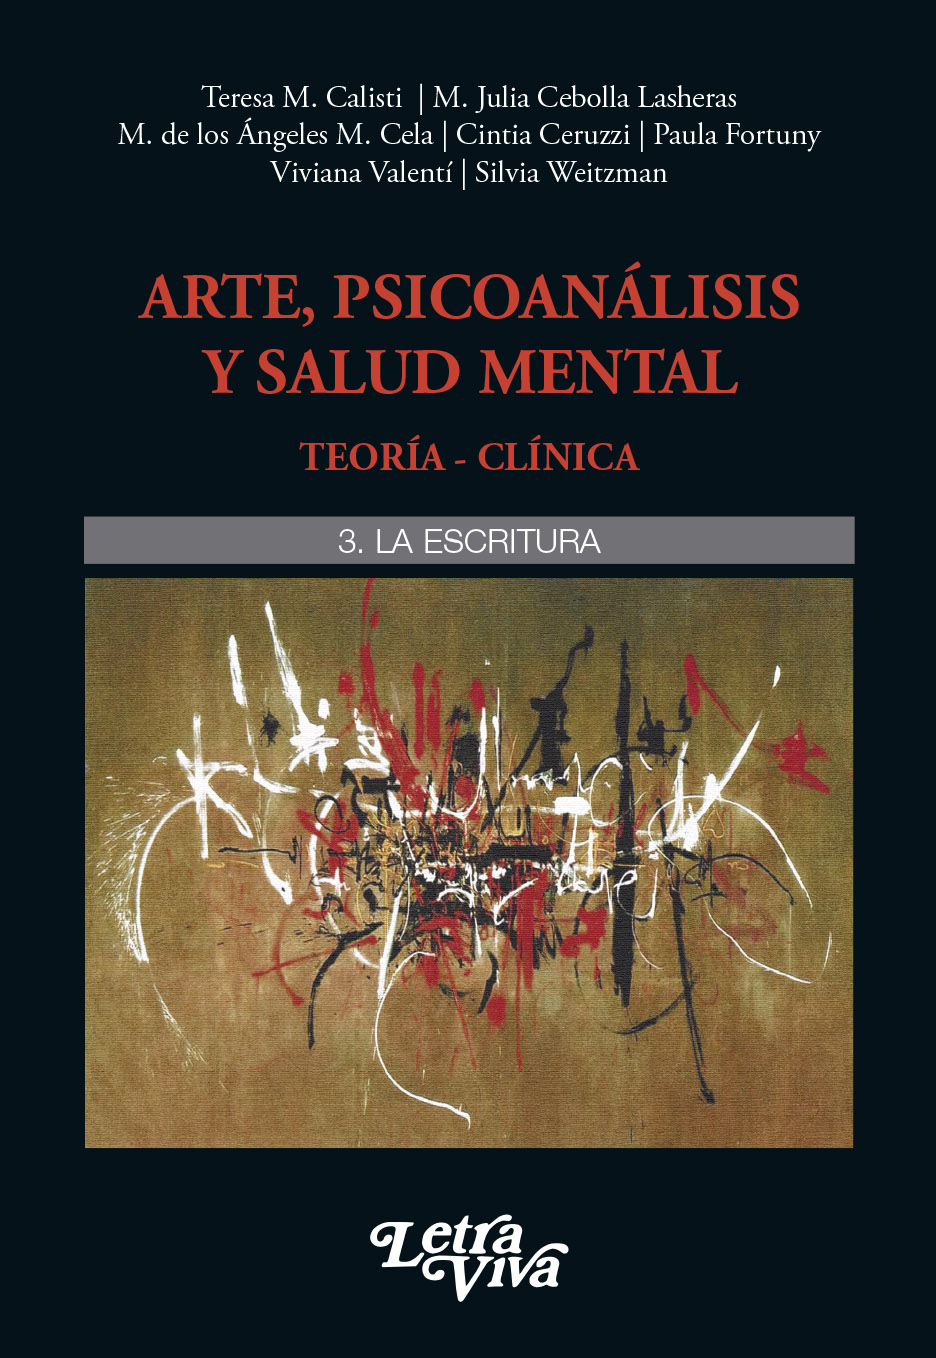 Pliegos de Tapa Arte y psicoanálisis (Vol. 3 y Vol. 4)